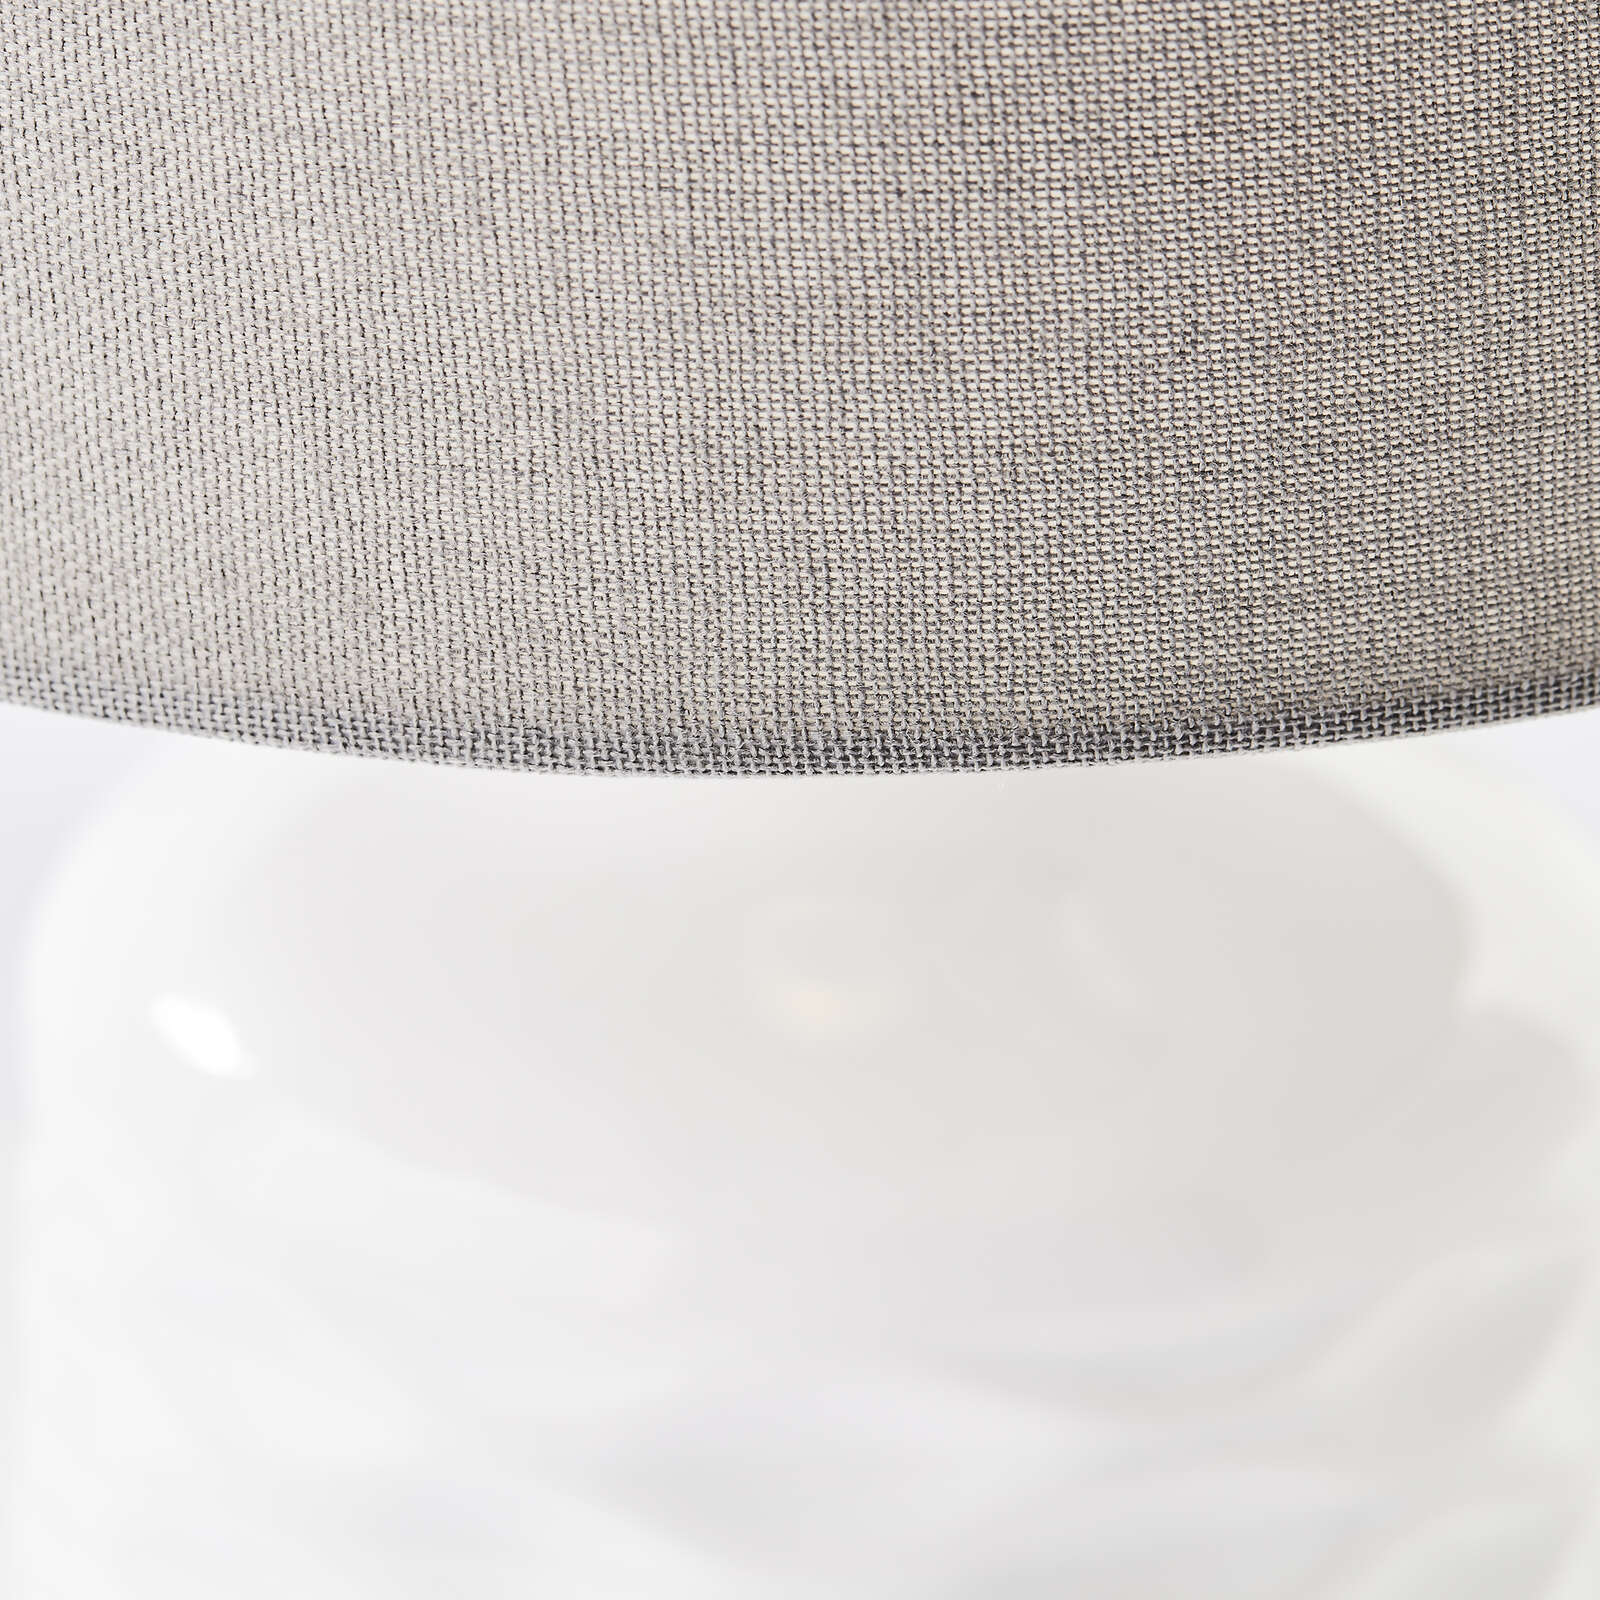             Lámpara de mesa textil - Jasper 1 - Gris
        